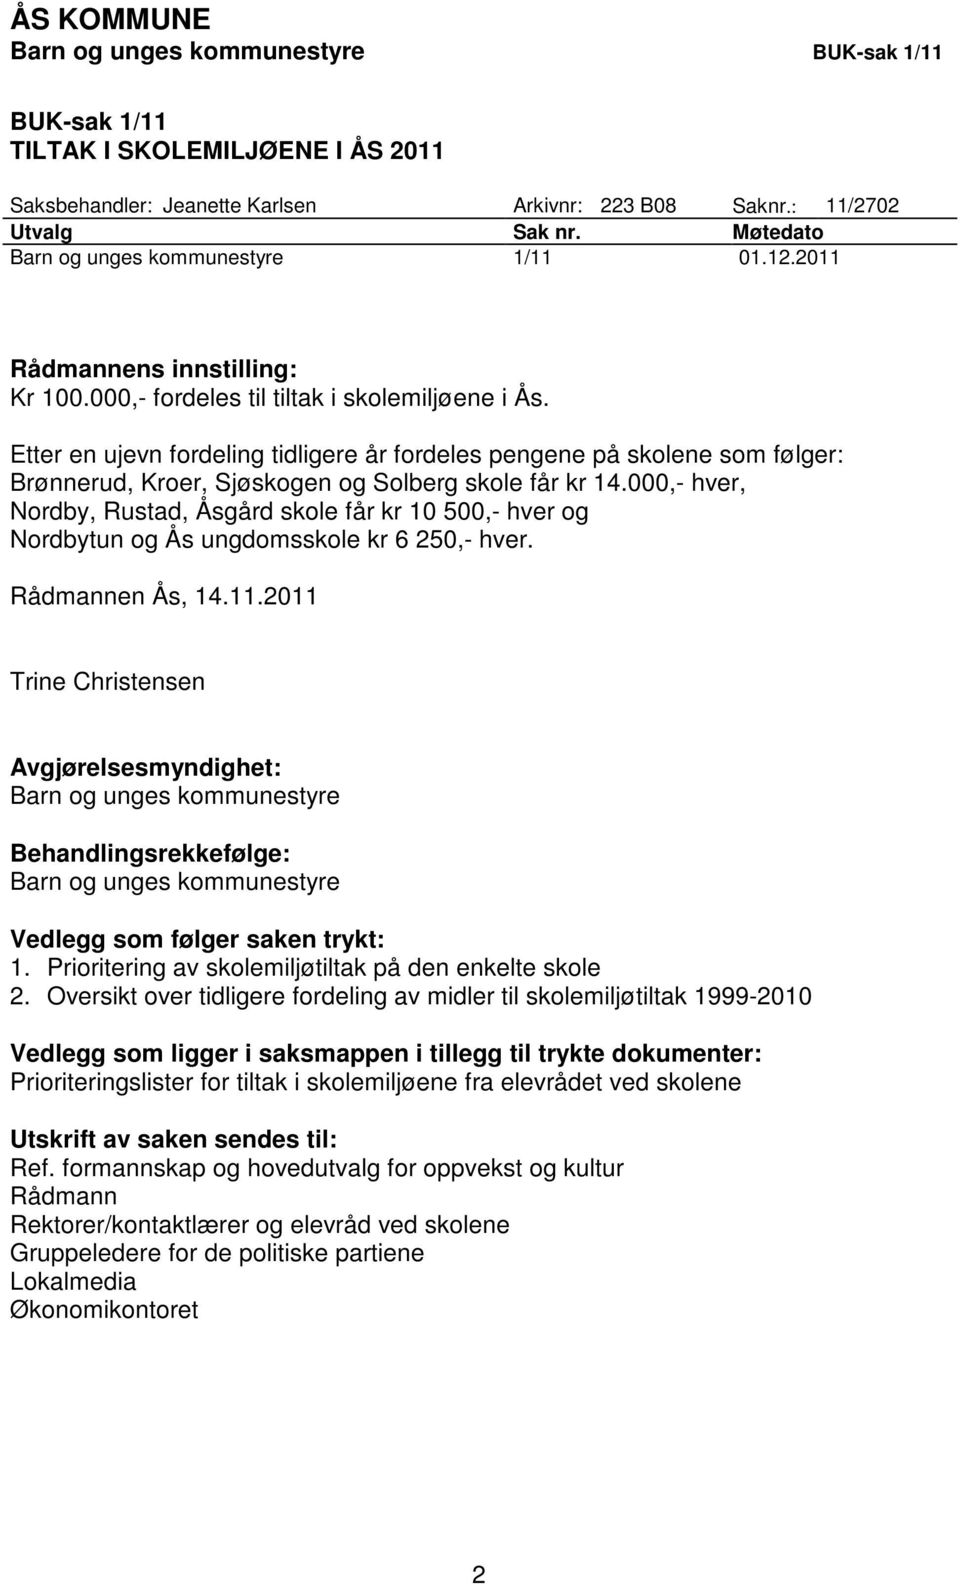 Etter en ujevn fordeling tidligere år fordeles pengene på skolene som følger: Brønnerud, Kroer, Sjøskogen og Solberg skole får kr 14.